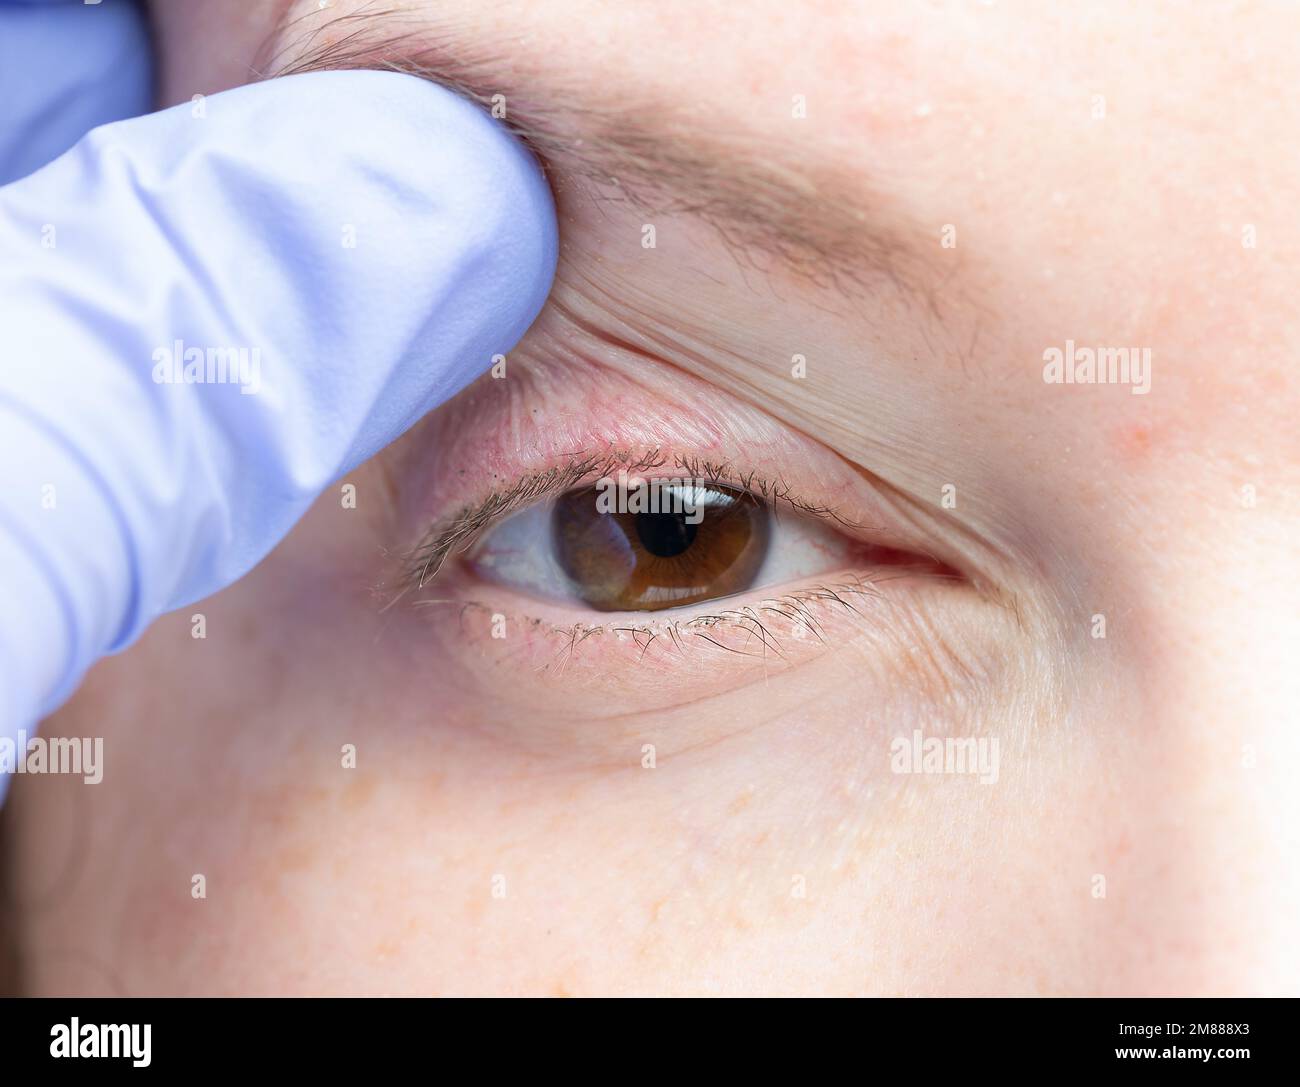 cerca del ojo de una mujer con una infección bacteriana de una glándula sebácea en el párpado inferior. Foto de stock